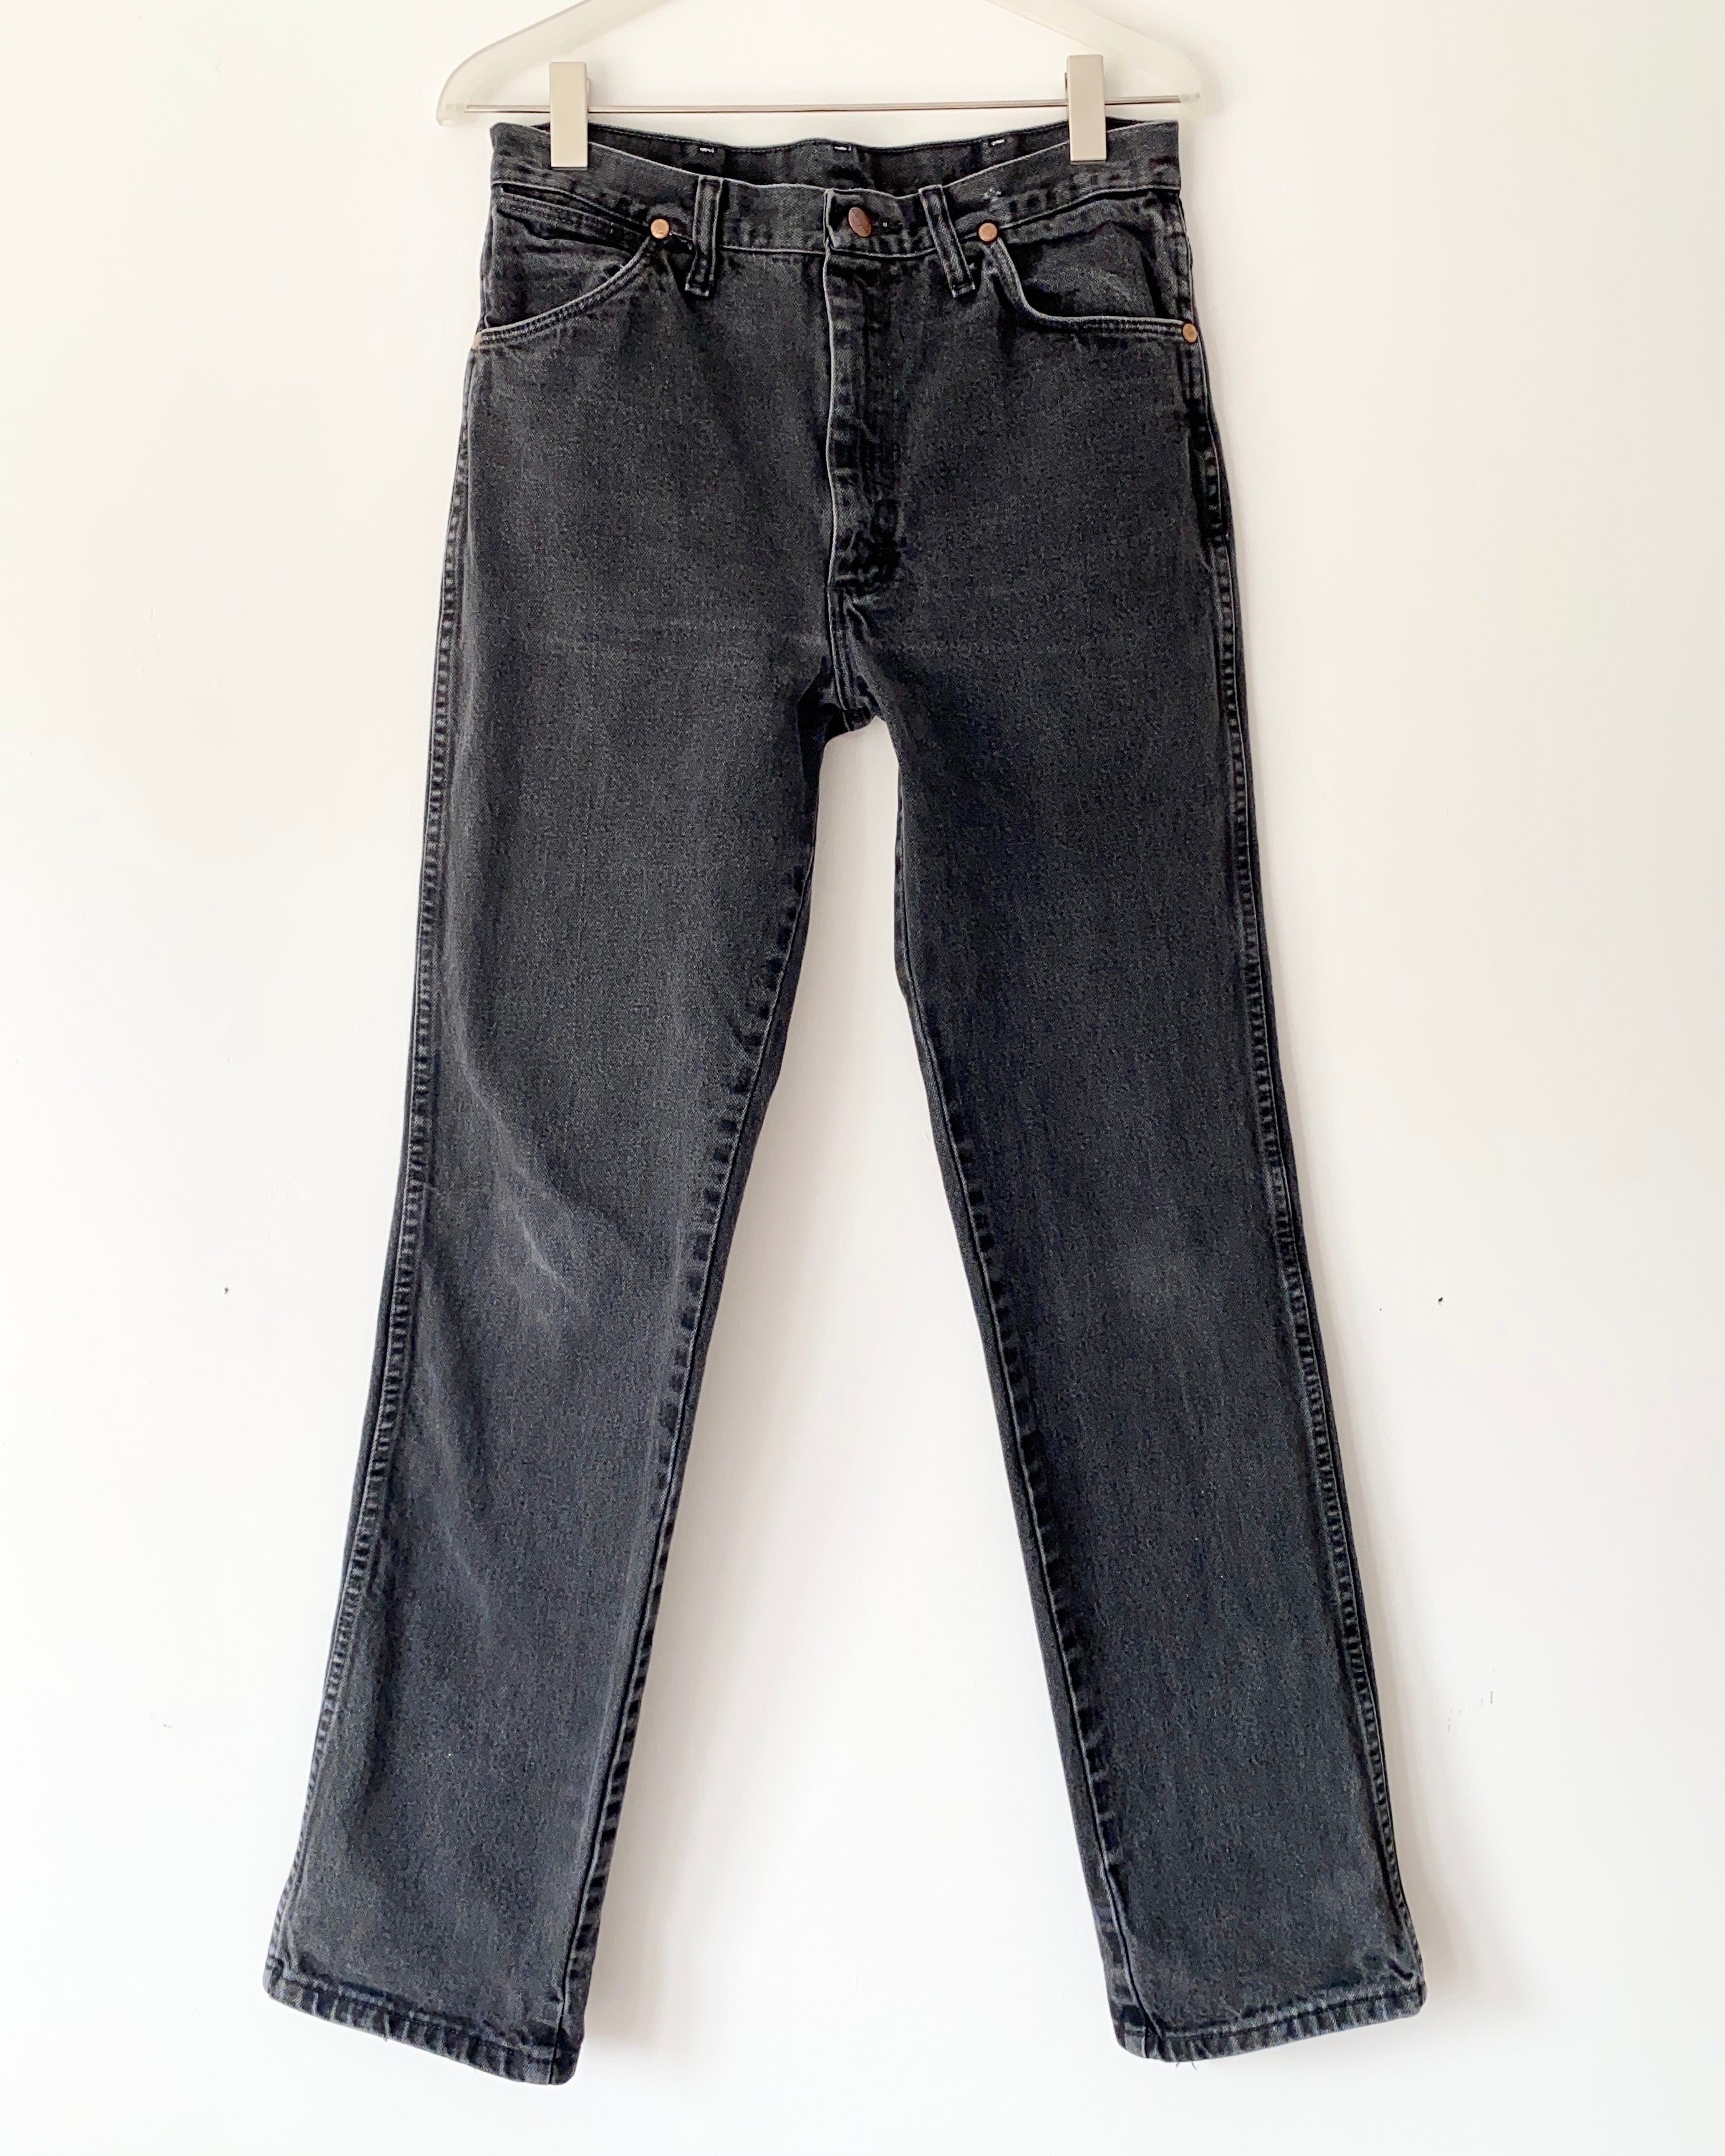 Vintage Wranglers Black Wash Jeans size 31